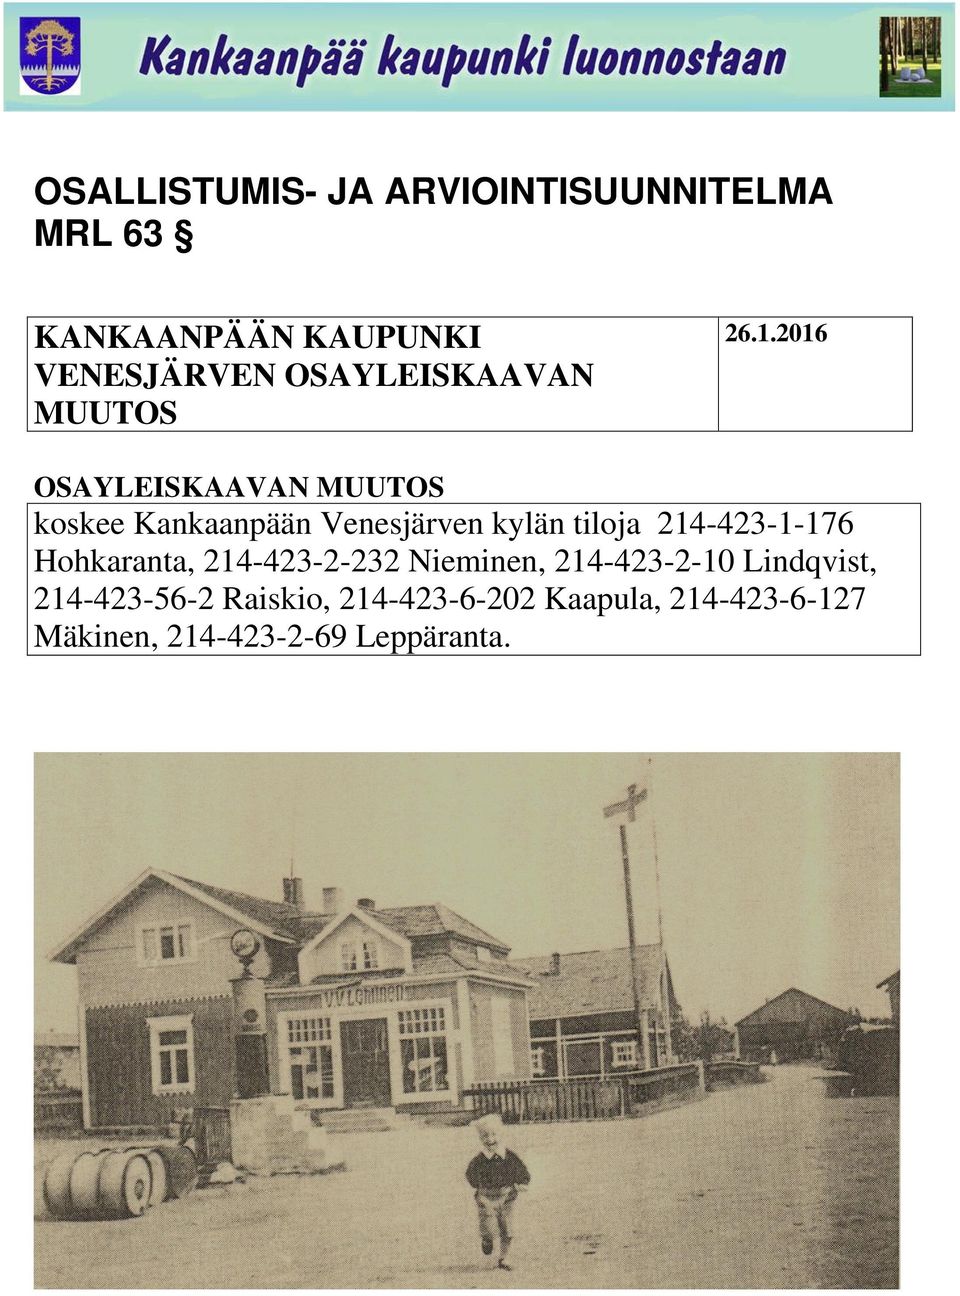 2016 OSAYLEISKAAVAN MUUTOS koskee Kankaanpään Venesjärven kylän tiloja 214-423-1-176